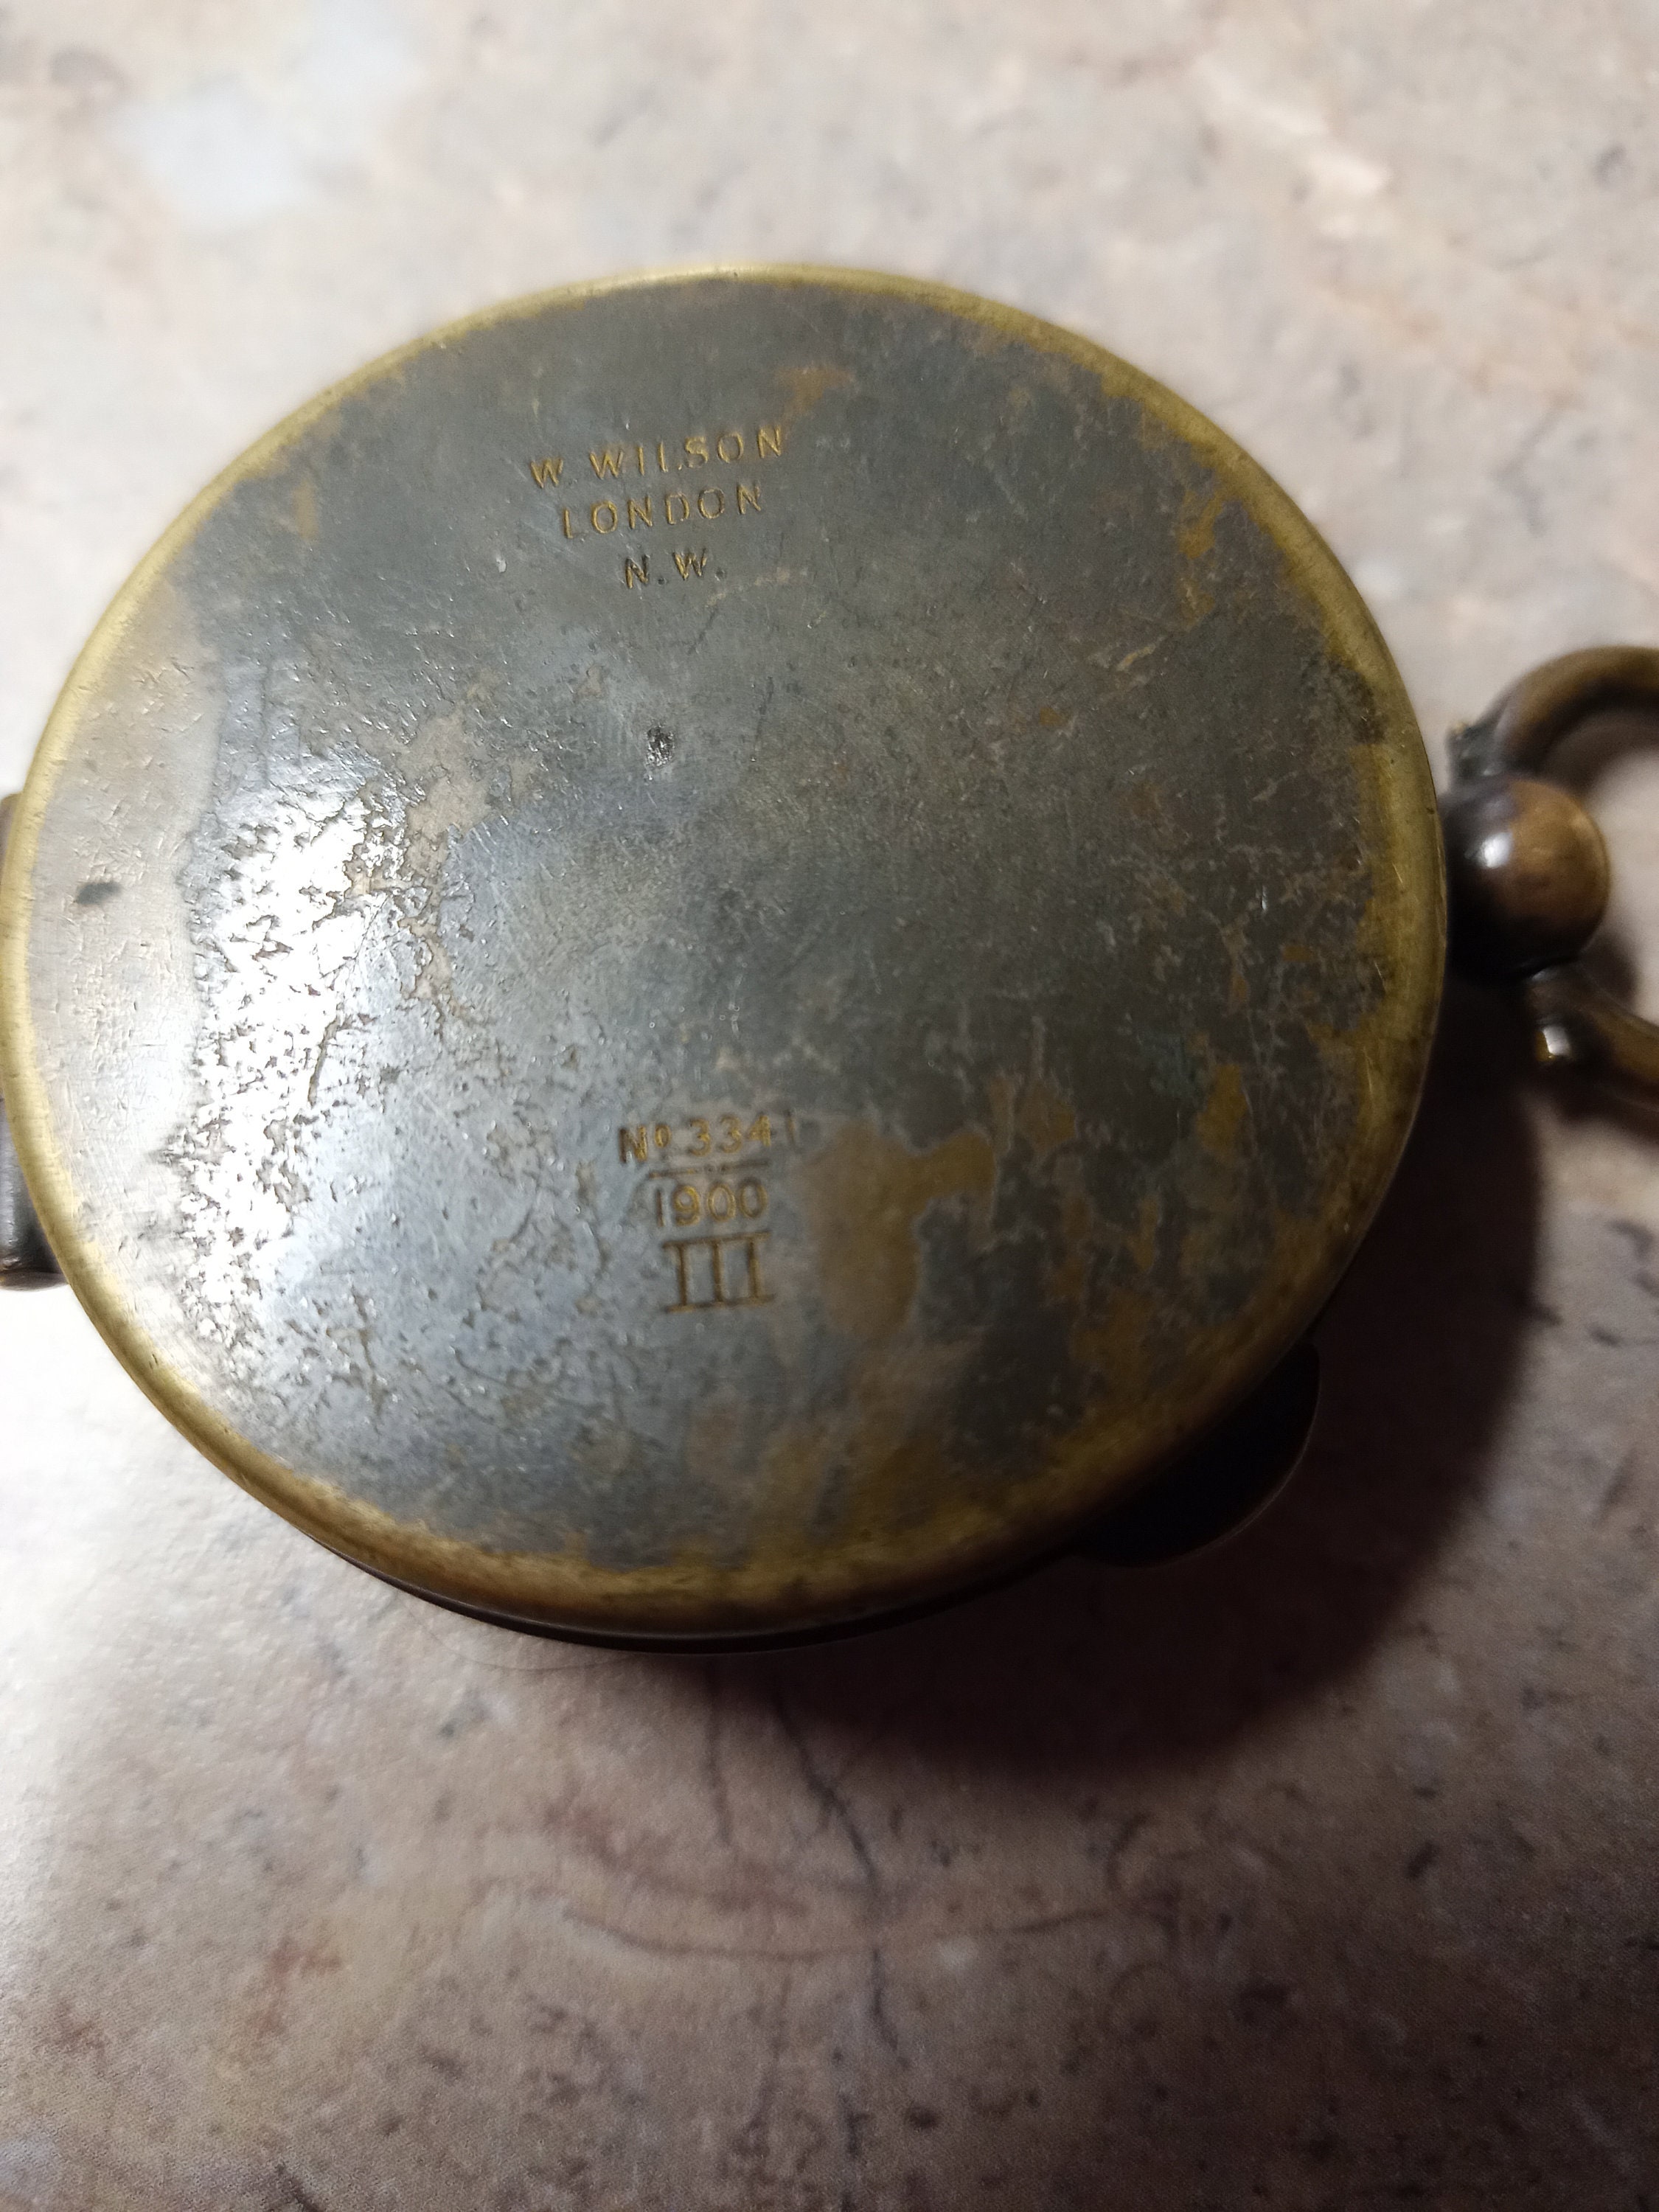 Antique British Military Compass Circa 1900 - Etsy Canada